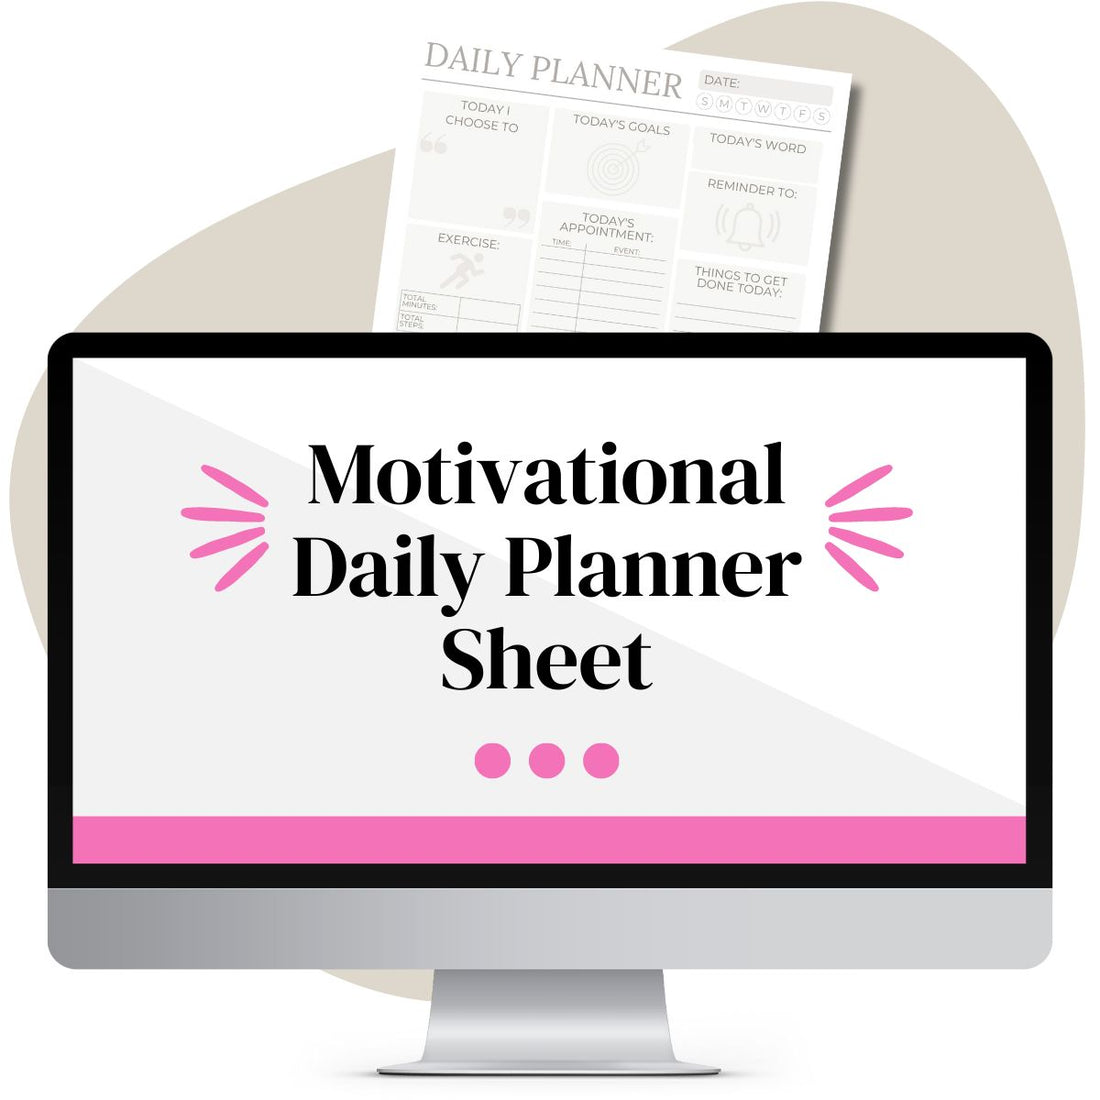 Motivational Daily Planner Sheet (Tan)